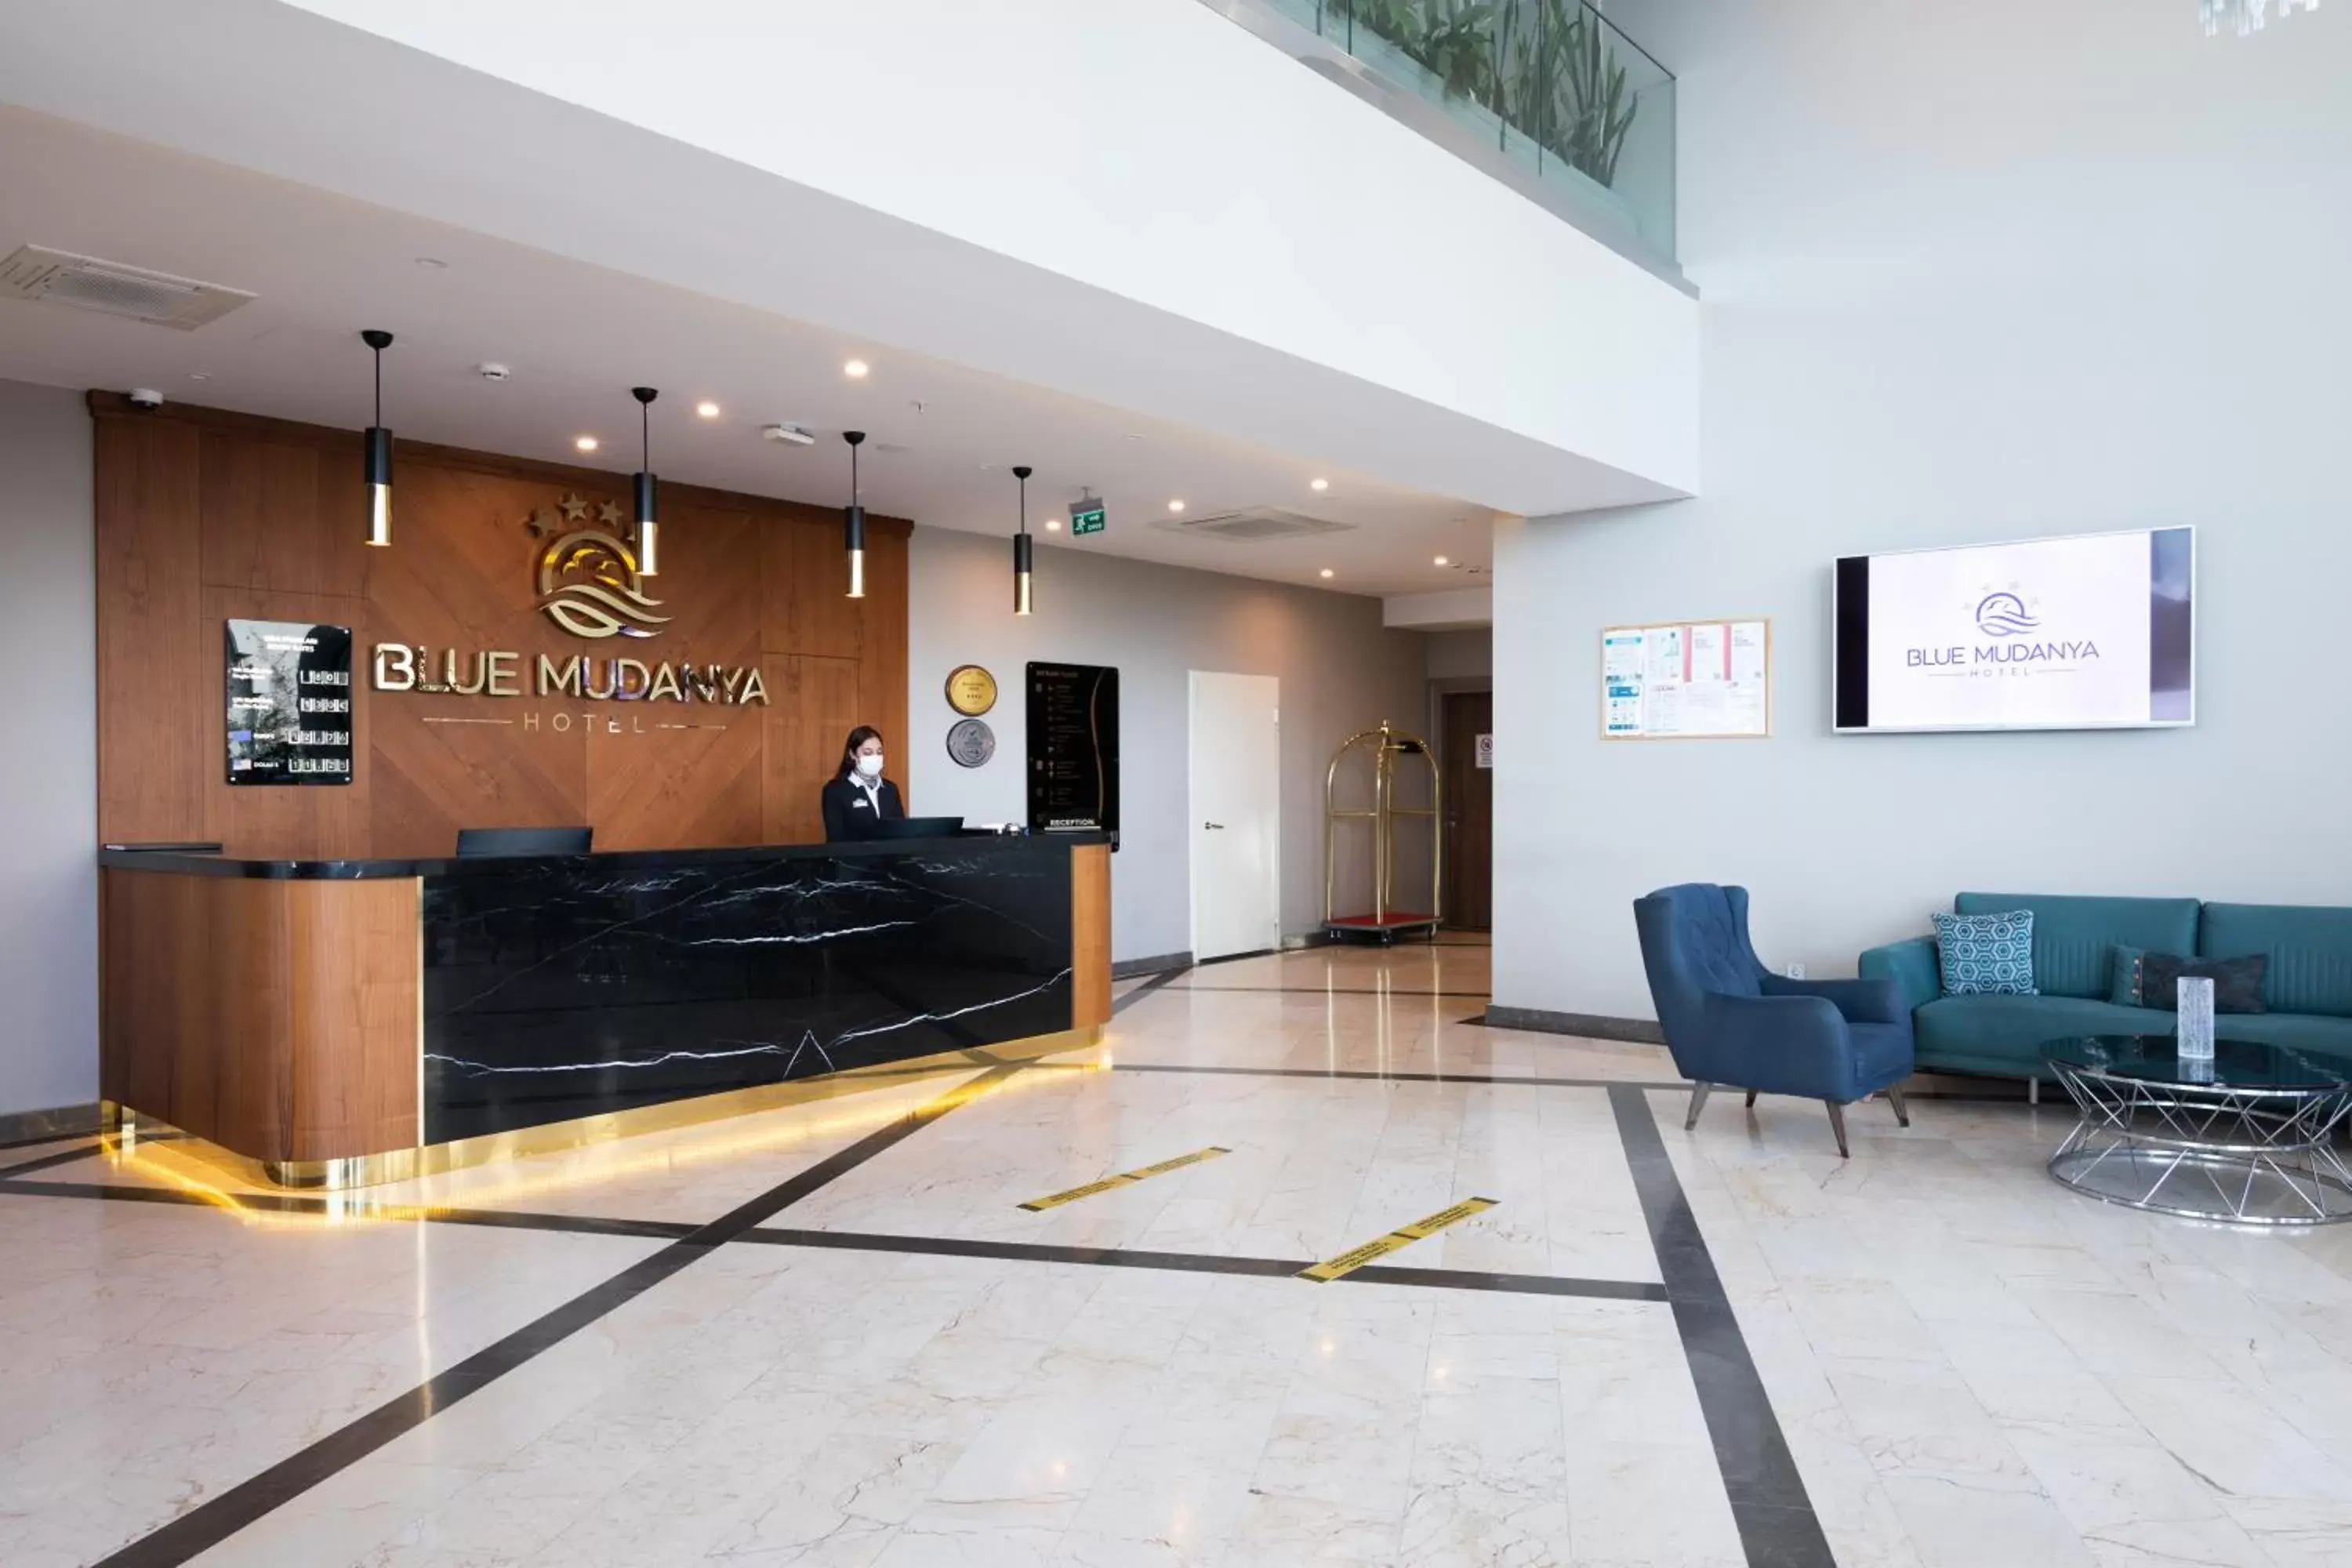 Lobby or reception, Lobby/Reception in BLUE MUDANYA HOTEL